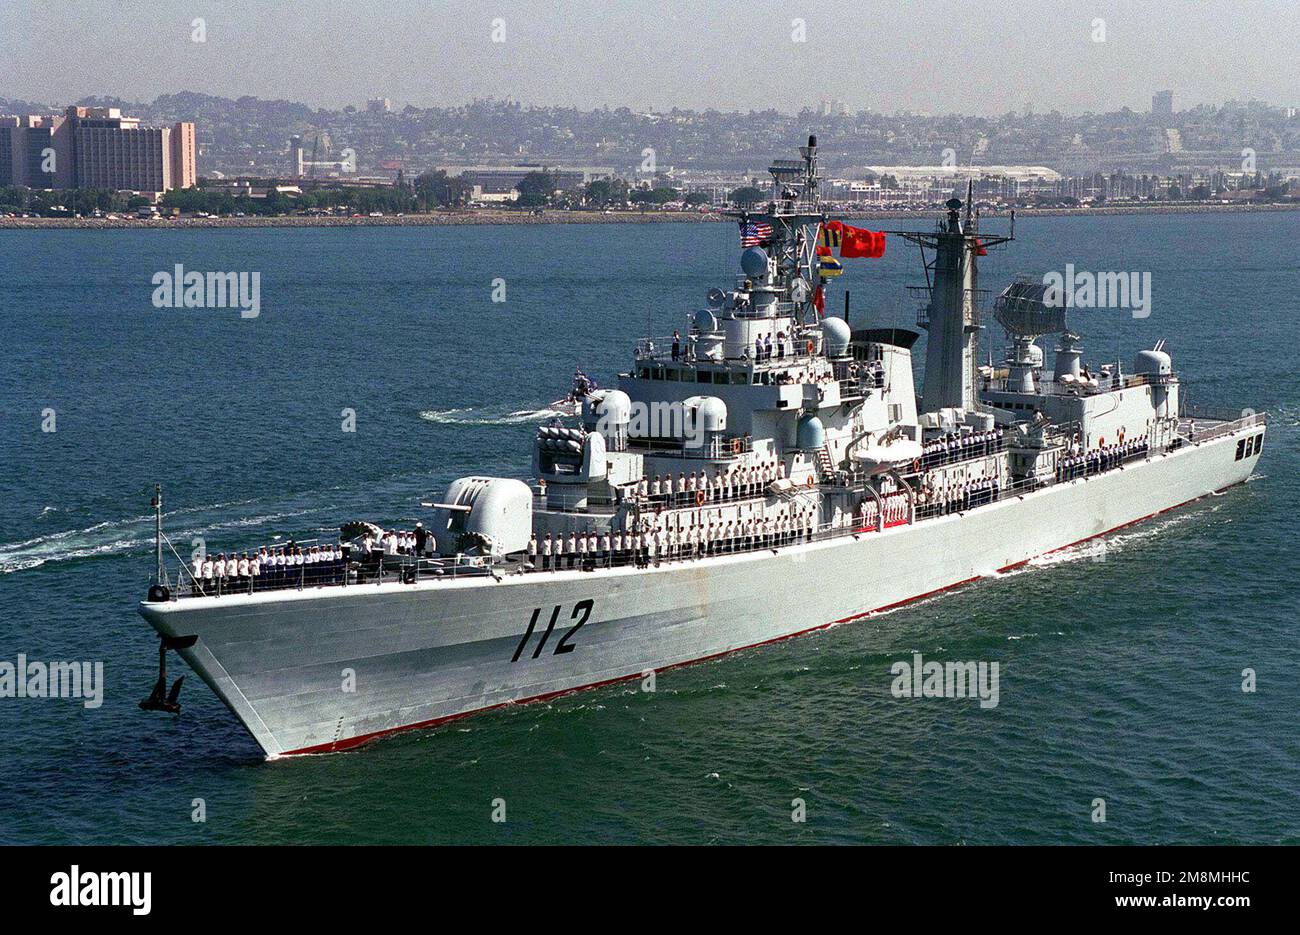 Der chinesische Zerstörer der Luhu-Klasse, HARIBING (DDG 112), verlässt San Diego, Kalifornien, mit einer Crew, die die Gleise besetzt. Dies kennzeichnete das erste Mal, dass chinesische Kriegsschiffe den Pazifik überquerten und den Kontinent der Vereinigten Staaten besuchten. Der Zerstörer der Luhu-Klasse HARIBING (DDG 112), der Zerstörer der Luda-II-Klasse, ZHUHAI (DDG 166) und ein Versorgungsschiff der Fusu-Klasse, NANYUN (AOR/AK 953) (ZHUHAI und NANYUN nicht abgebildet), halten an der Marinestelle, Nordinsel, San Diego, Kalifornien. Basis: Marineflugstation, Nordinsel Bundesstaat: Kalifornien (CA) Land: Vereinigte Staaten von Amerika (USA) Stockfoto